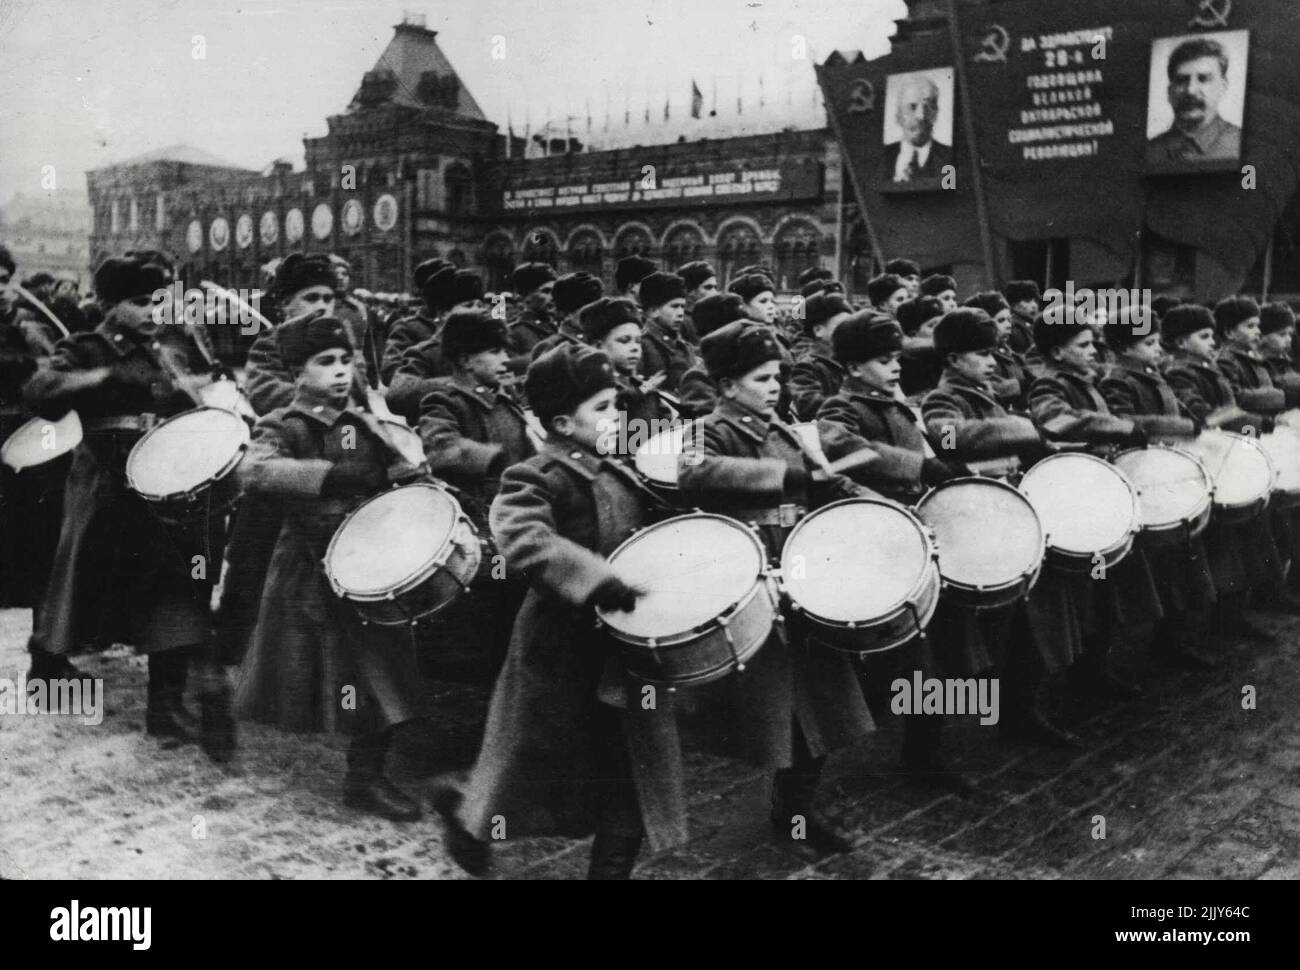 Mosca celebra il 29th anniversario della Rivoluzione -- Boy batteristi dell'accademia militare passando attraverso la piazza Rod nella recensione. Il 29th° anniversario della rivoluzione russa è stato celebrato a Mosca, quando le truppe della guarnigione locale e i cadetti e gli studenti dell'accademia militare, seguiti da una processione di operai che ha attraversato la Piazza Rossa per alcune ore. Marshal Govorov, che ha guidato i tedeschi da Leningrado, ha preso il saluto alla presenza di funzionari di partito e di Stato. Marshal Stalin non ha partecipato. Dicembre 01, 1946. Foto Stock